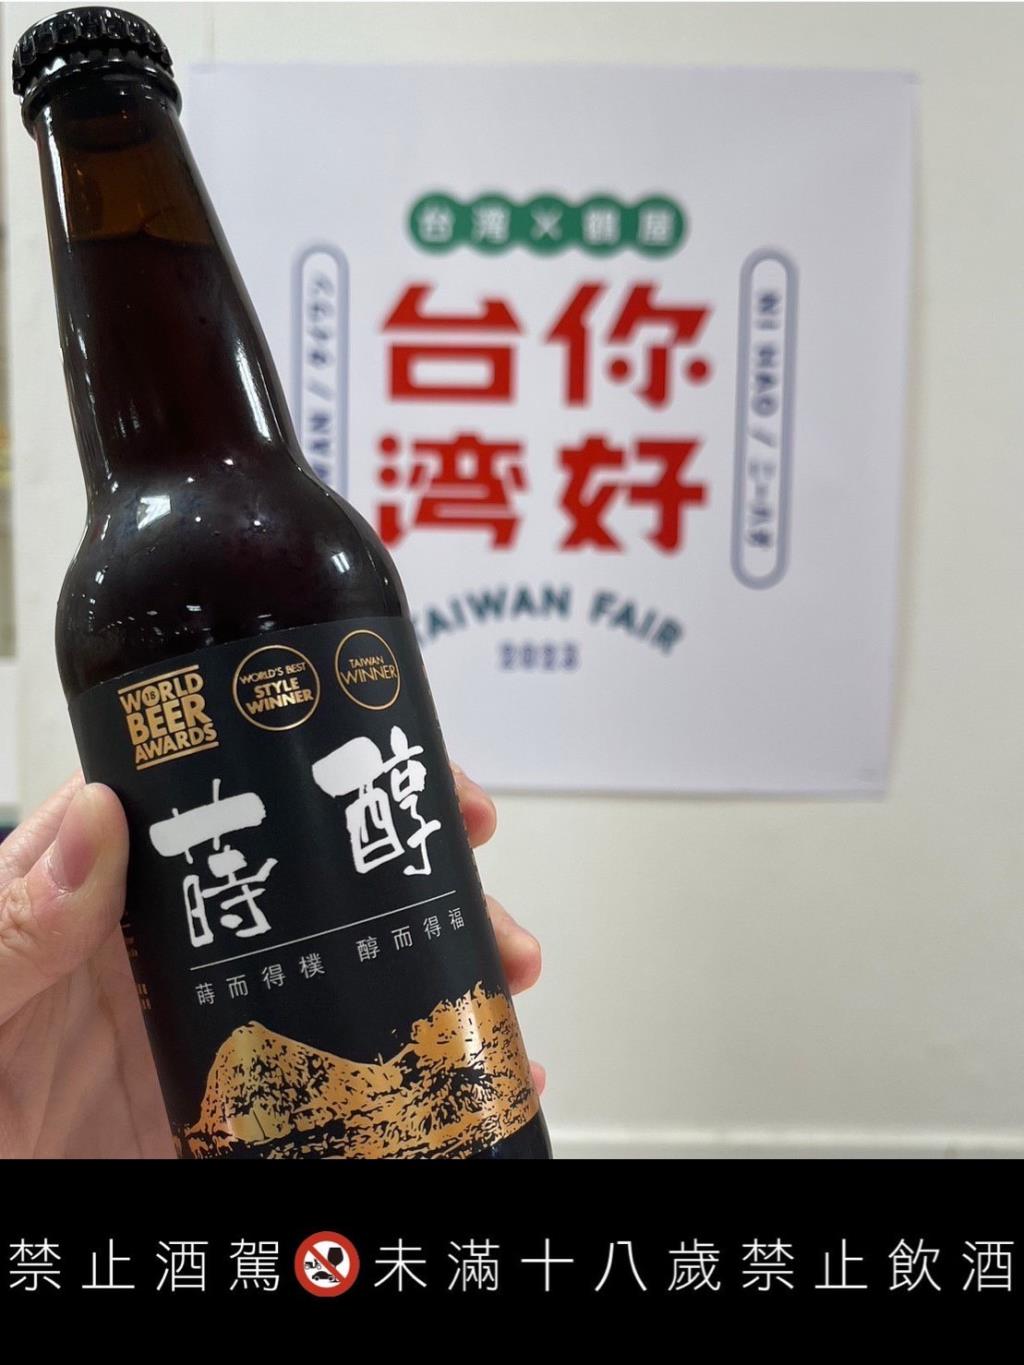 長榮大學受邀於展覽中展出世界冠軍啤酒「蒔醇」